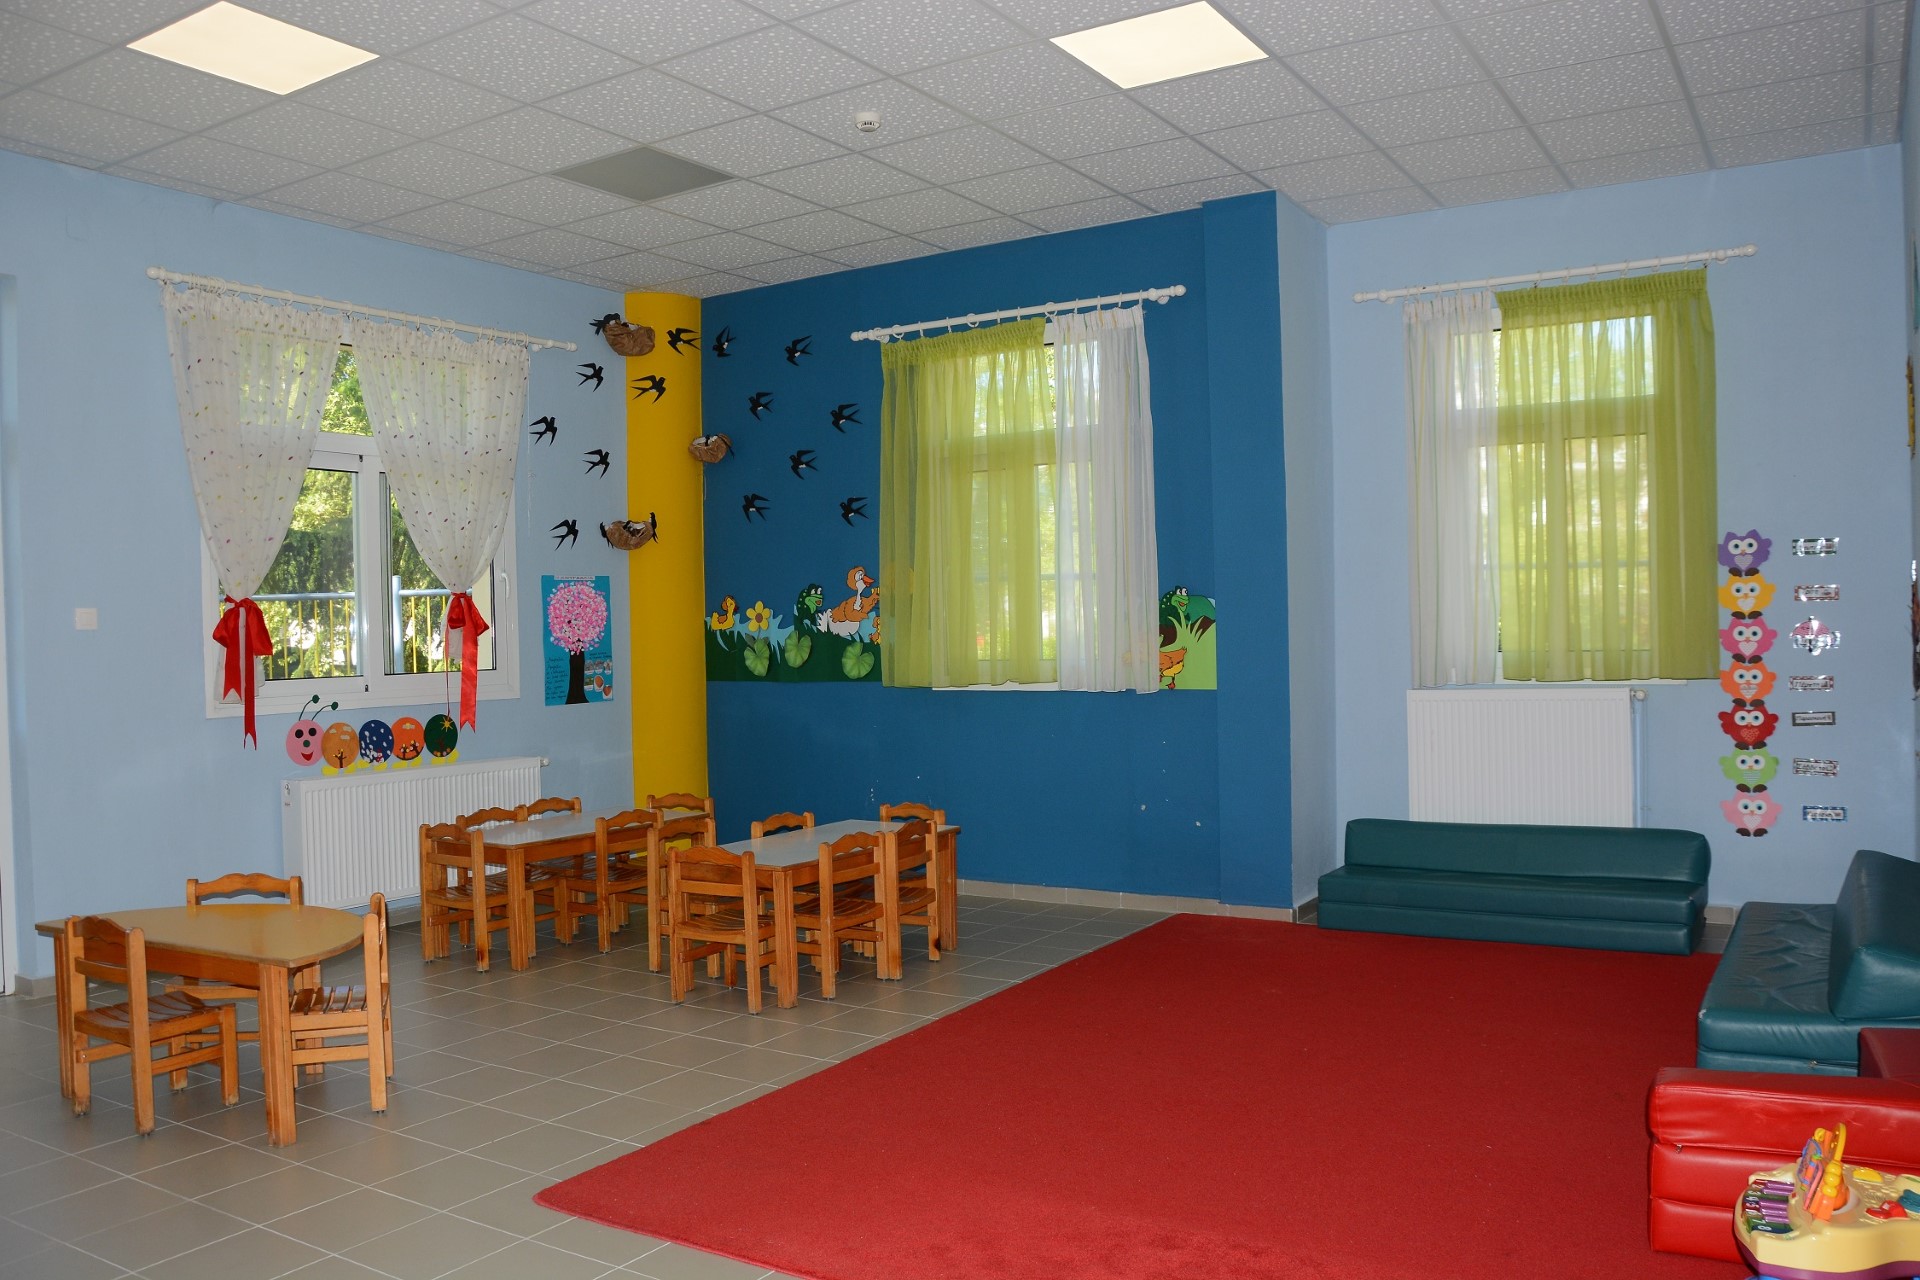 Δήμος Ελασσόνας: Έναρξη υποβολής αιτήσεων voucher για τους παιδικούς σταθμούς